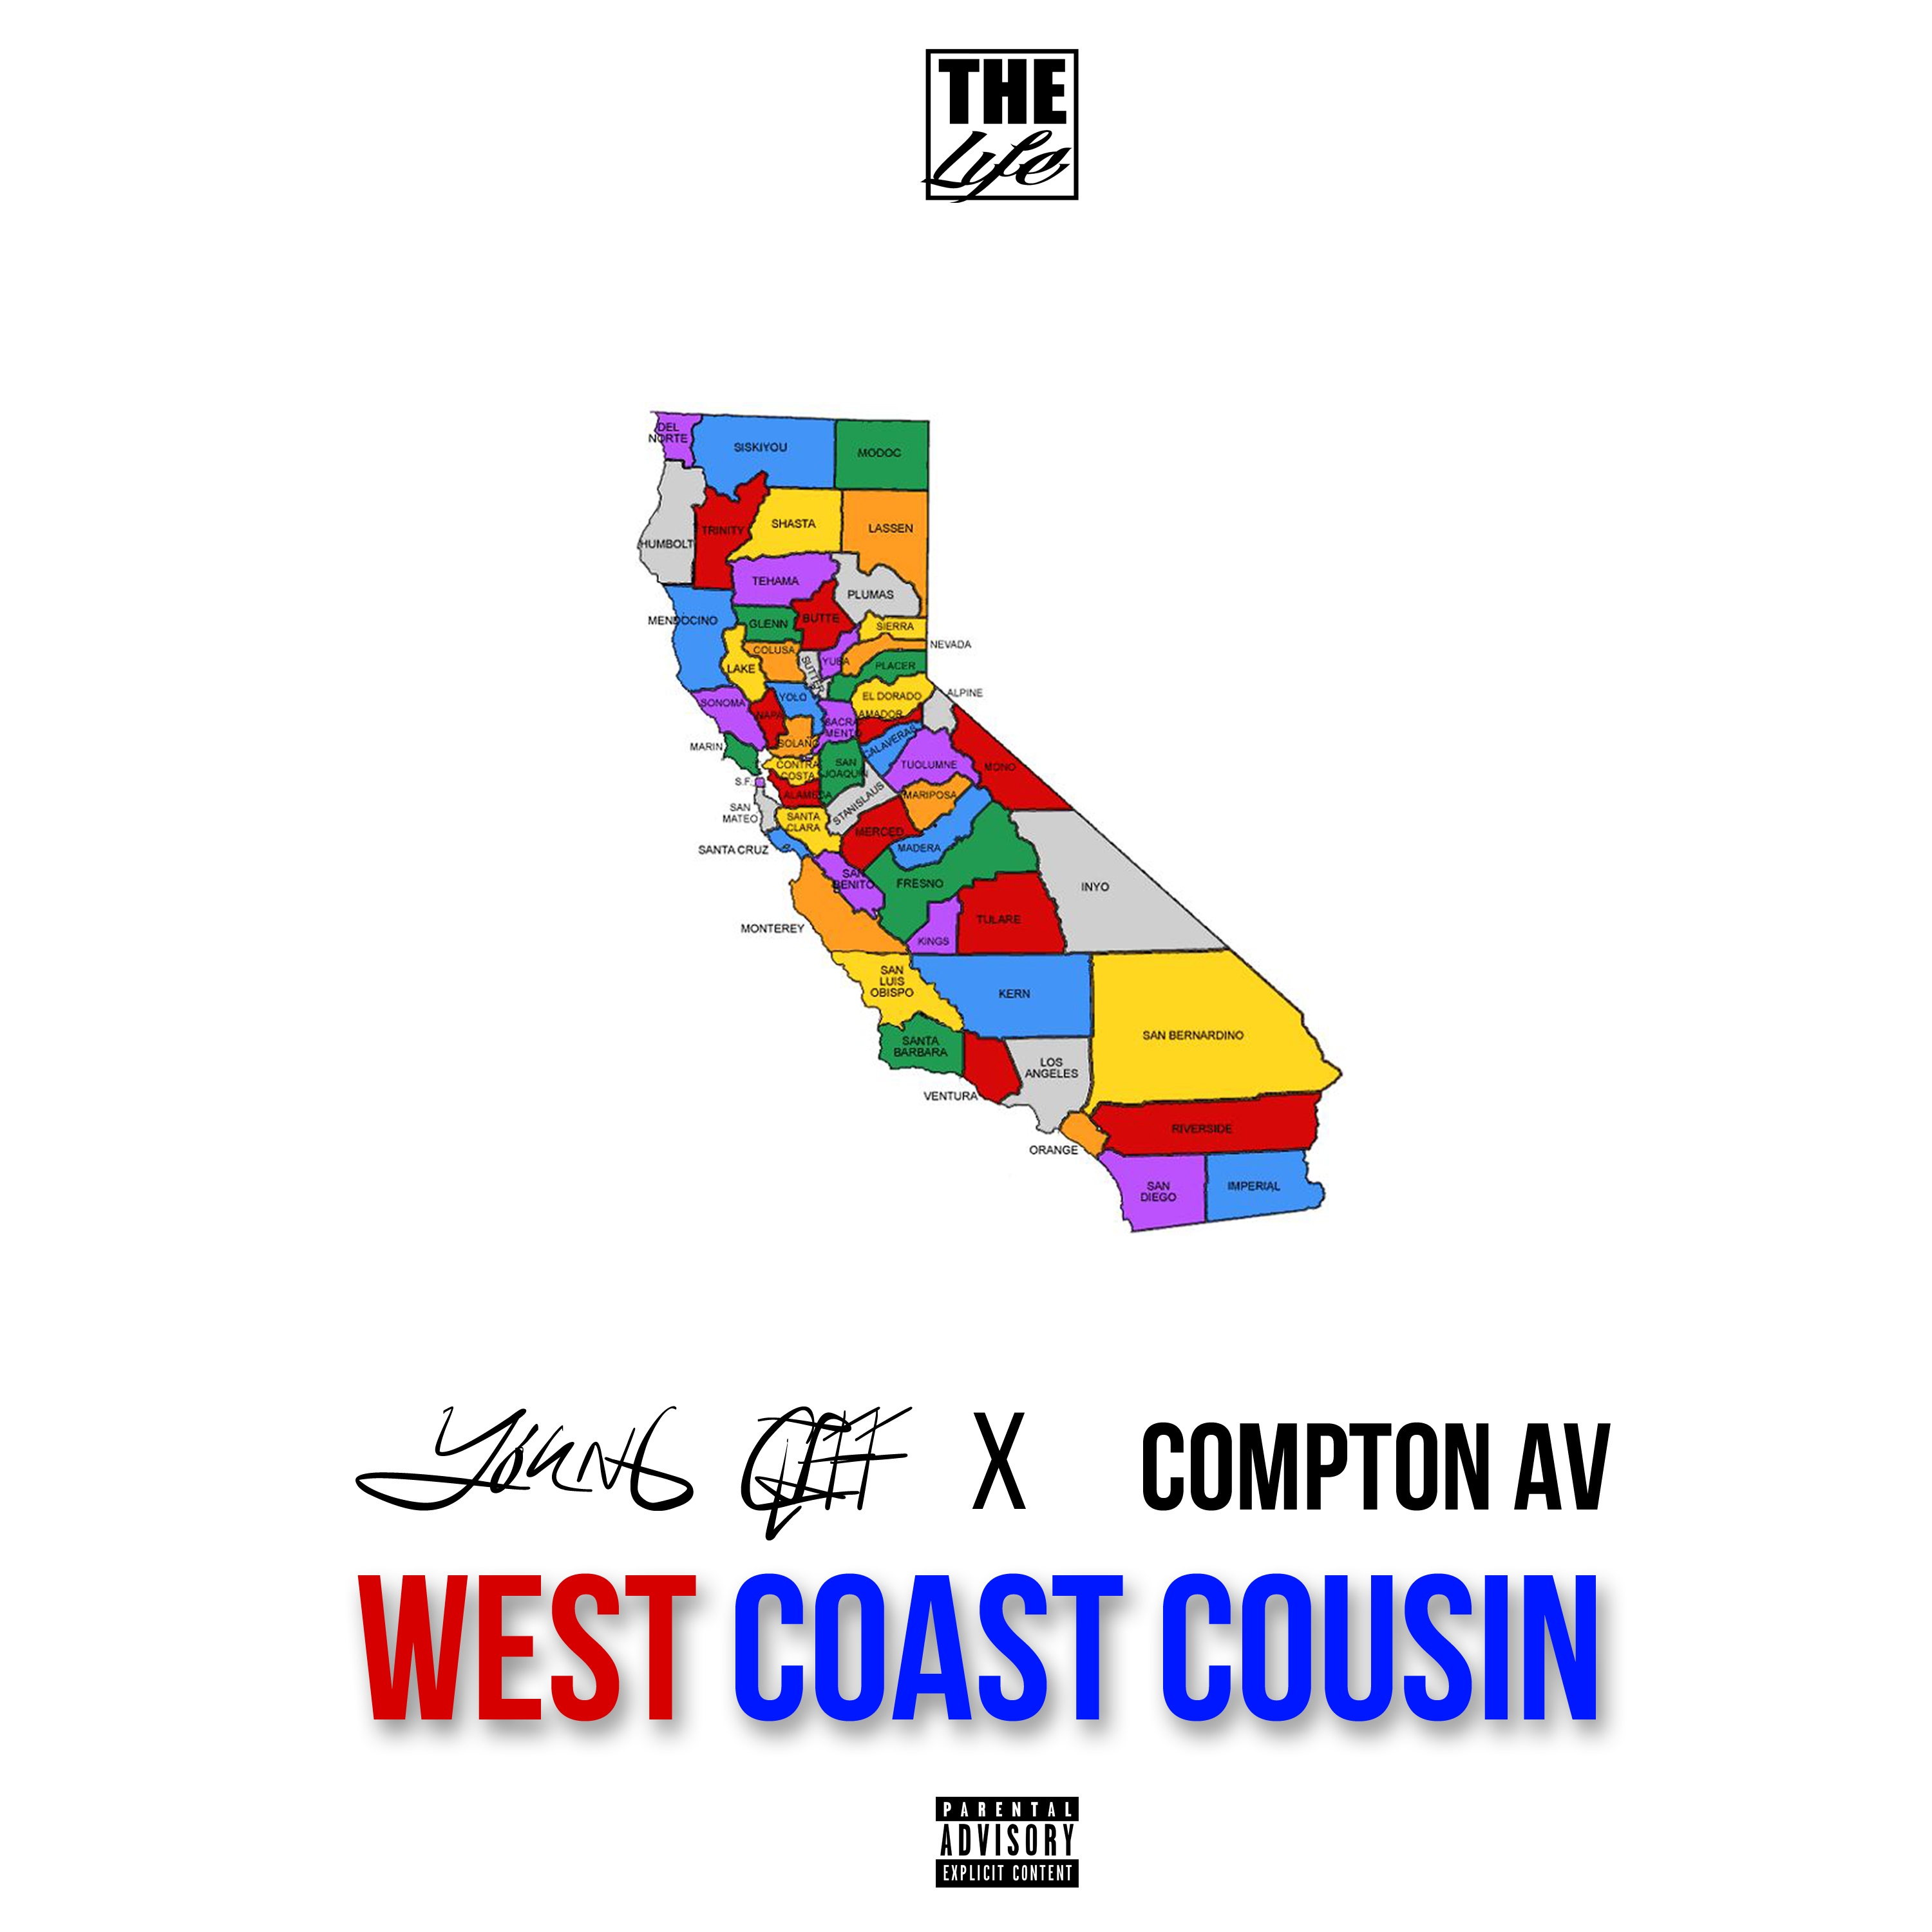 West Coast Cousin